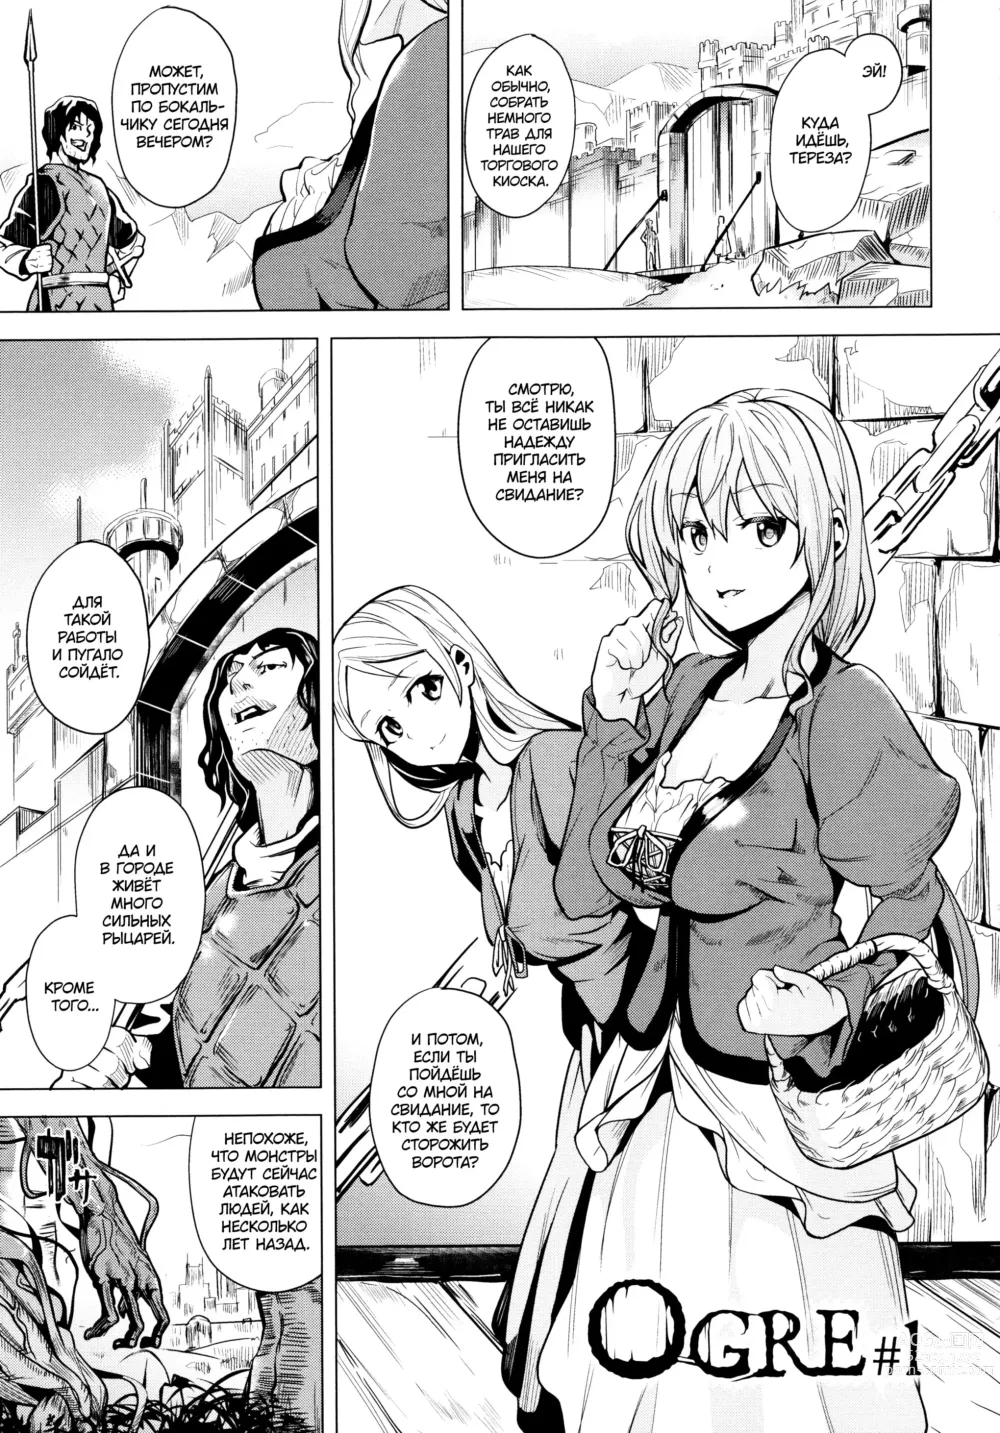 Page 1 of manga OGRE #1